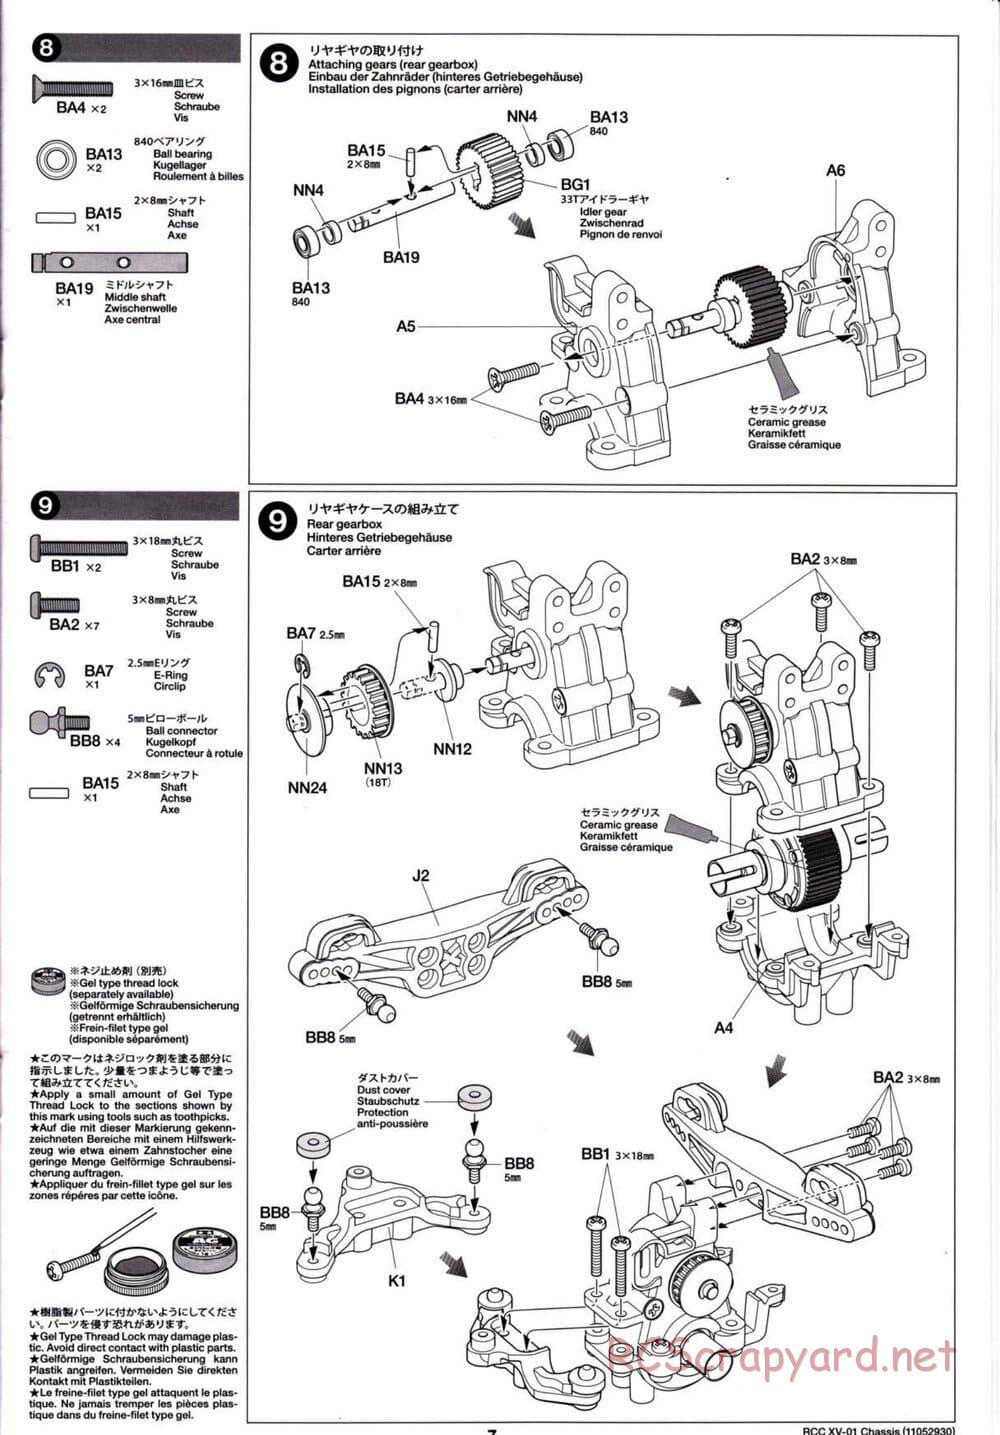 Tamiya - XV-01 Chassis - Manual - Page 7